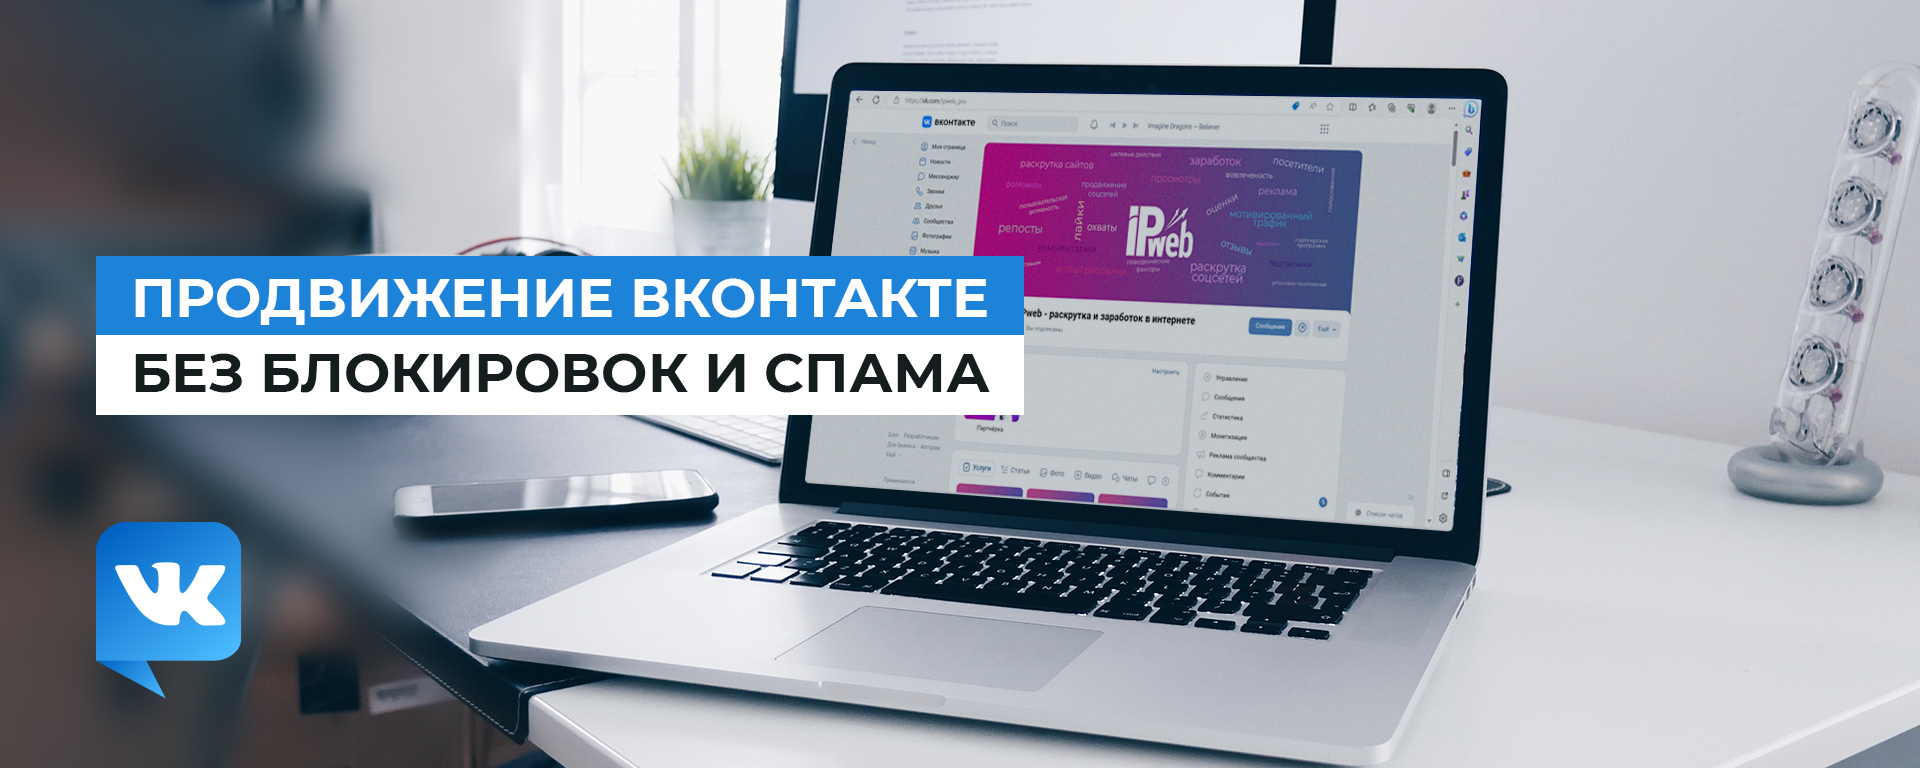 Продвижение Вконтакте без блокировок и спама